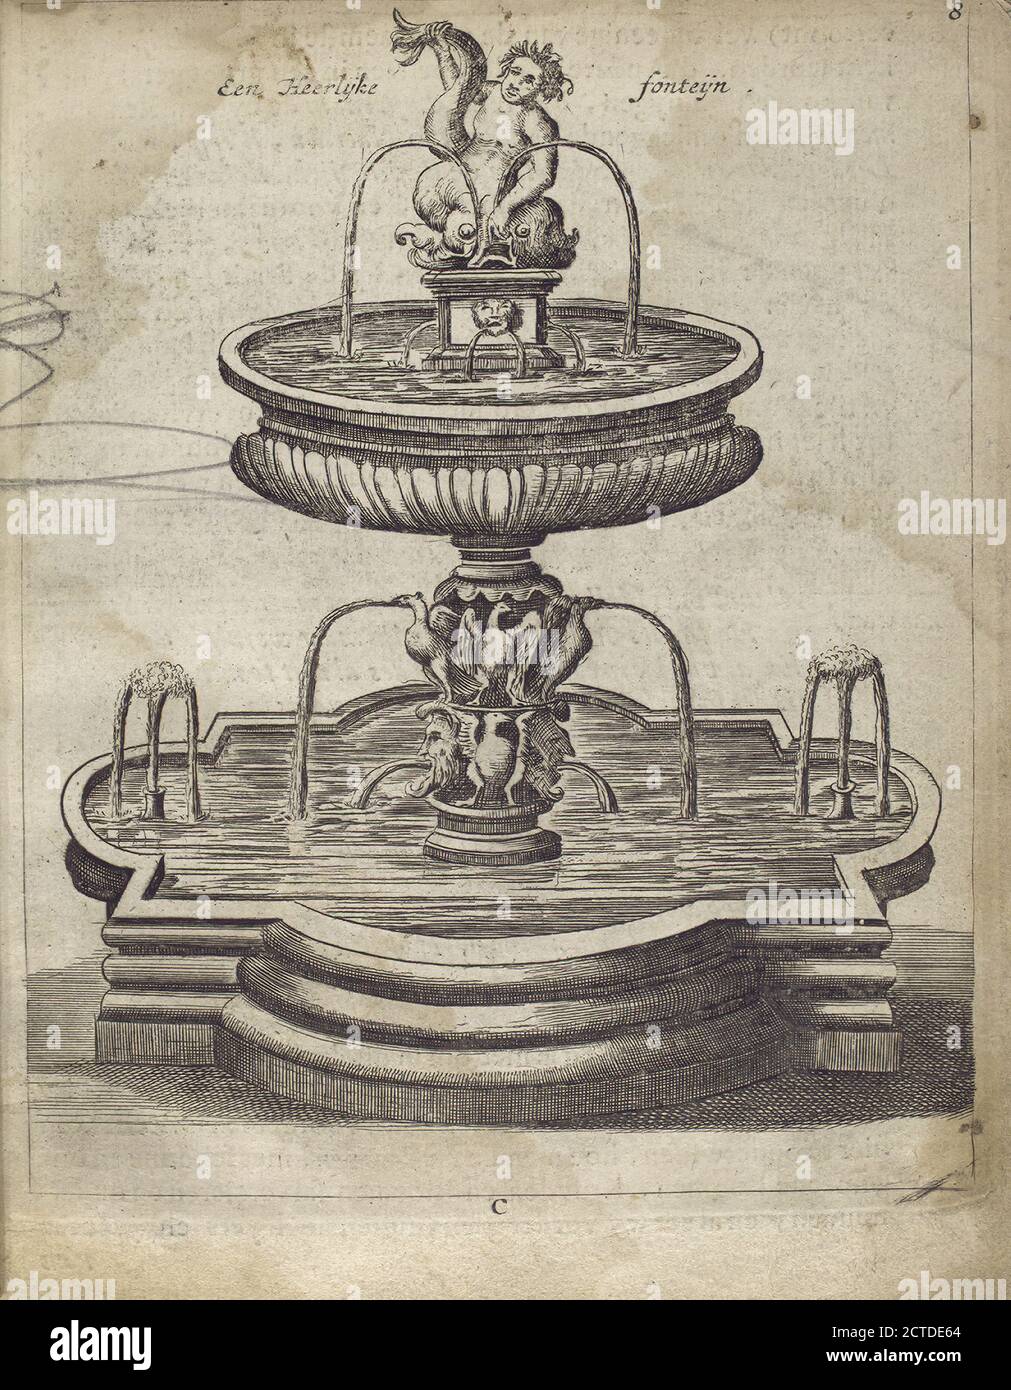 Een heerlÿke fonteÿn., still image, Prints, 1683 Stock Photo